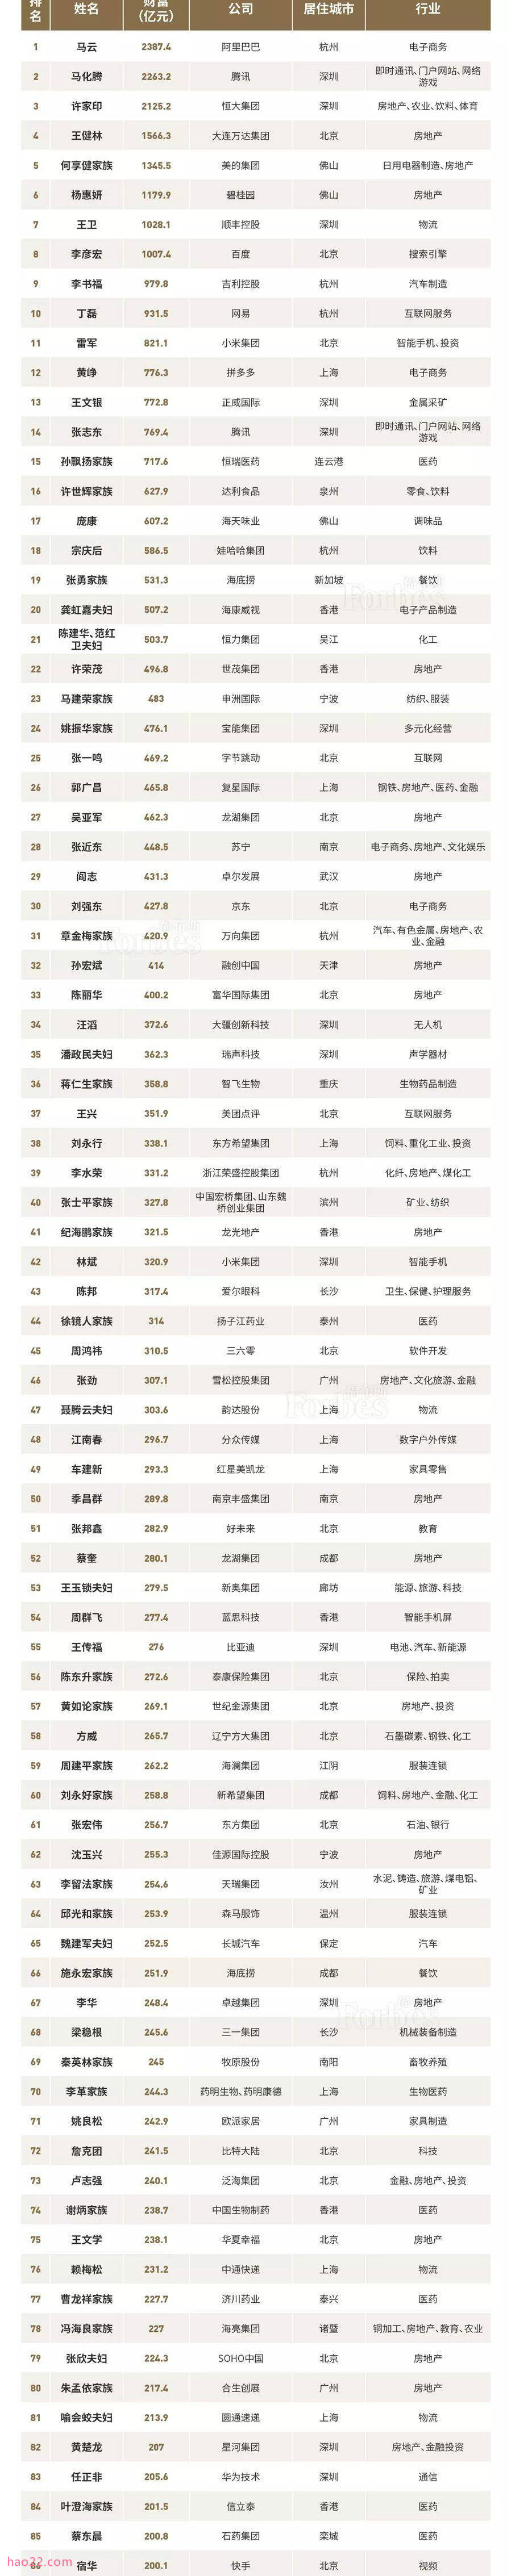 2018福布斯中国富豪榜TOP100排名 